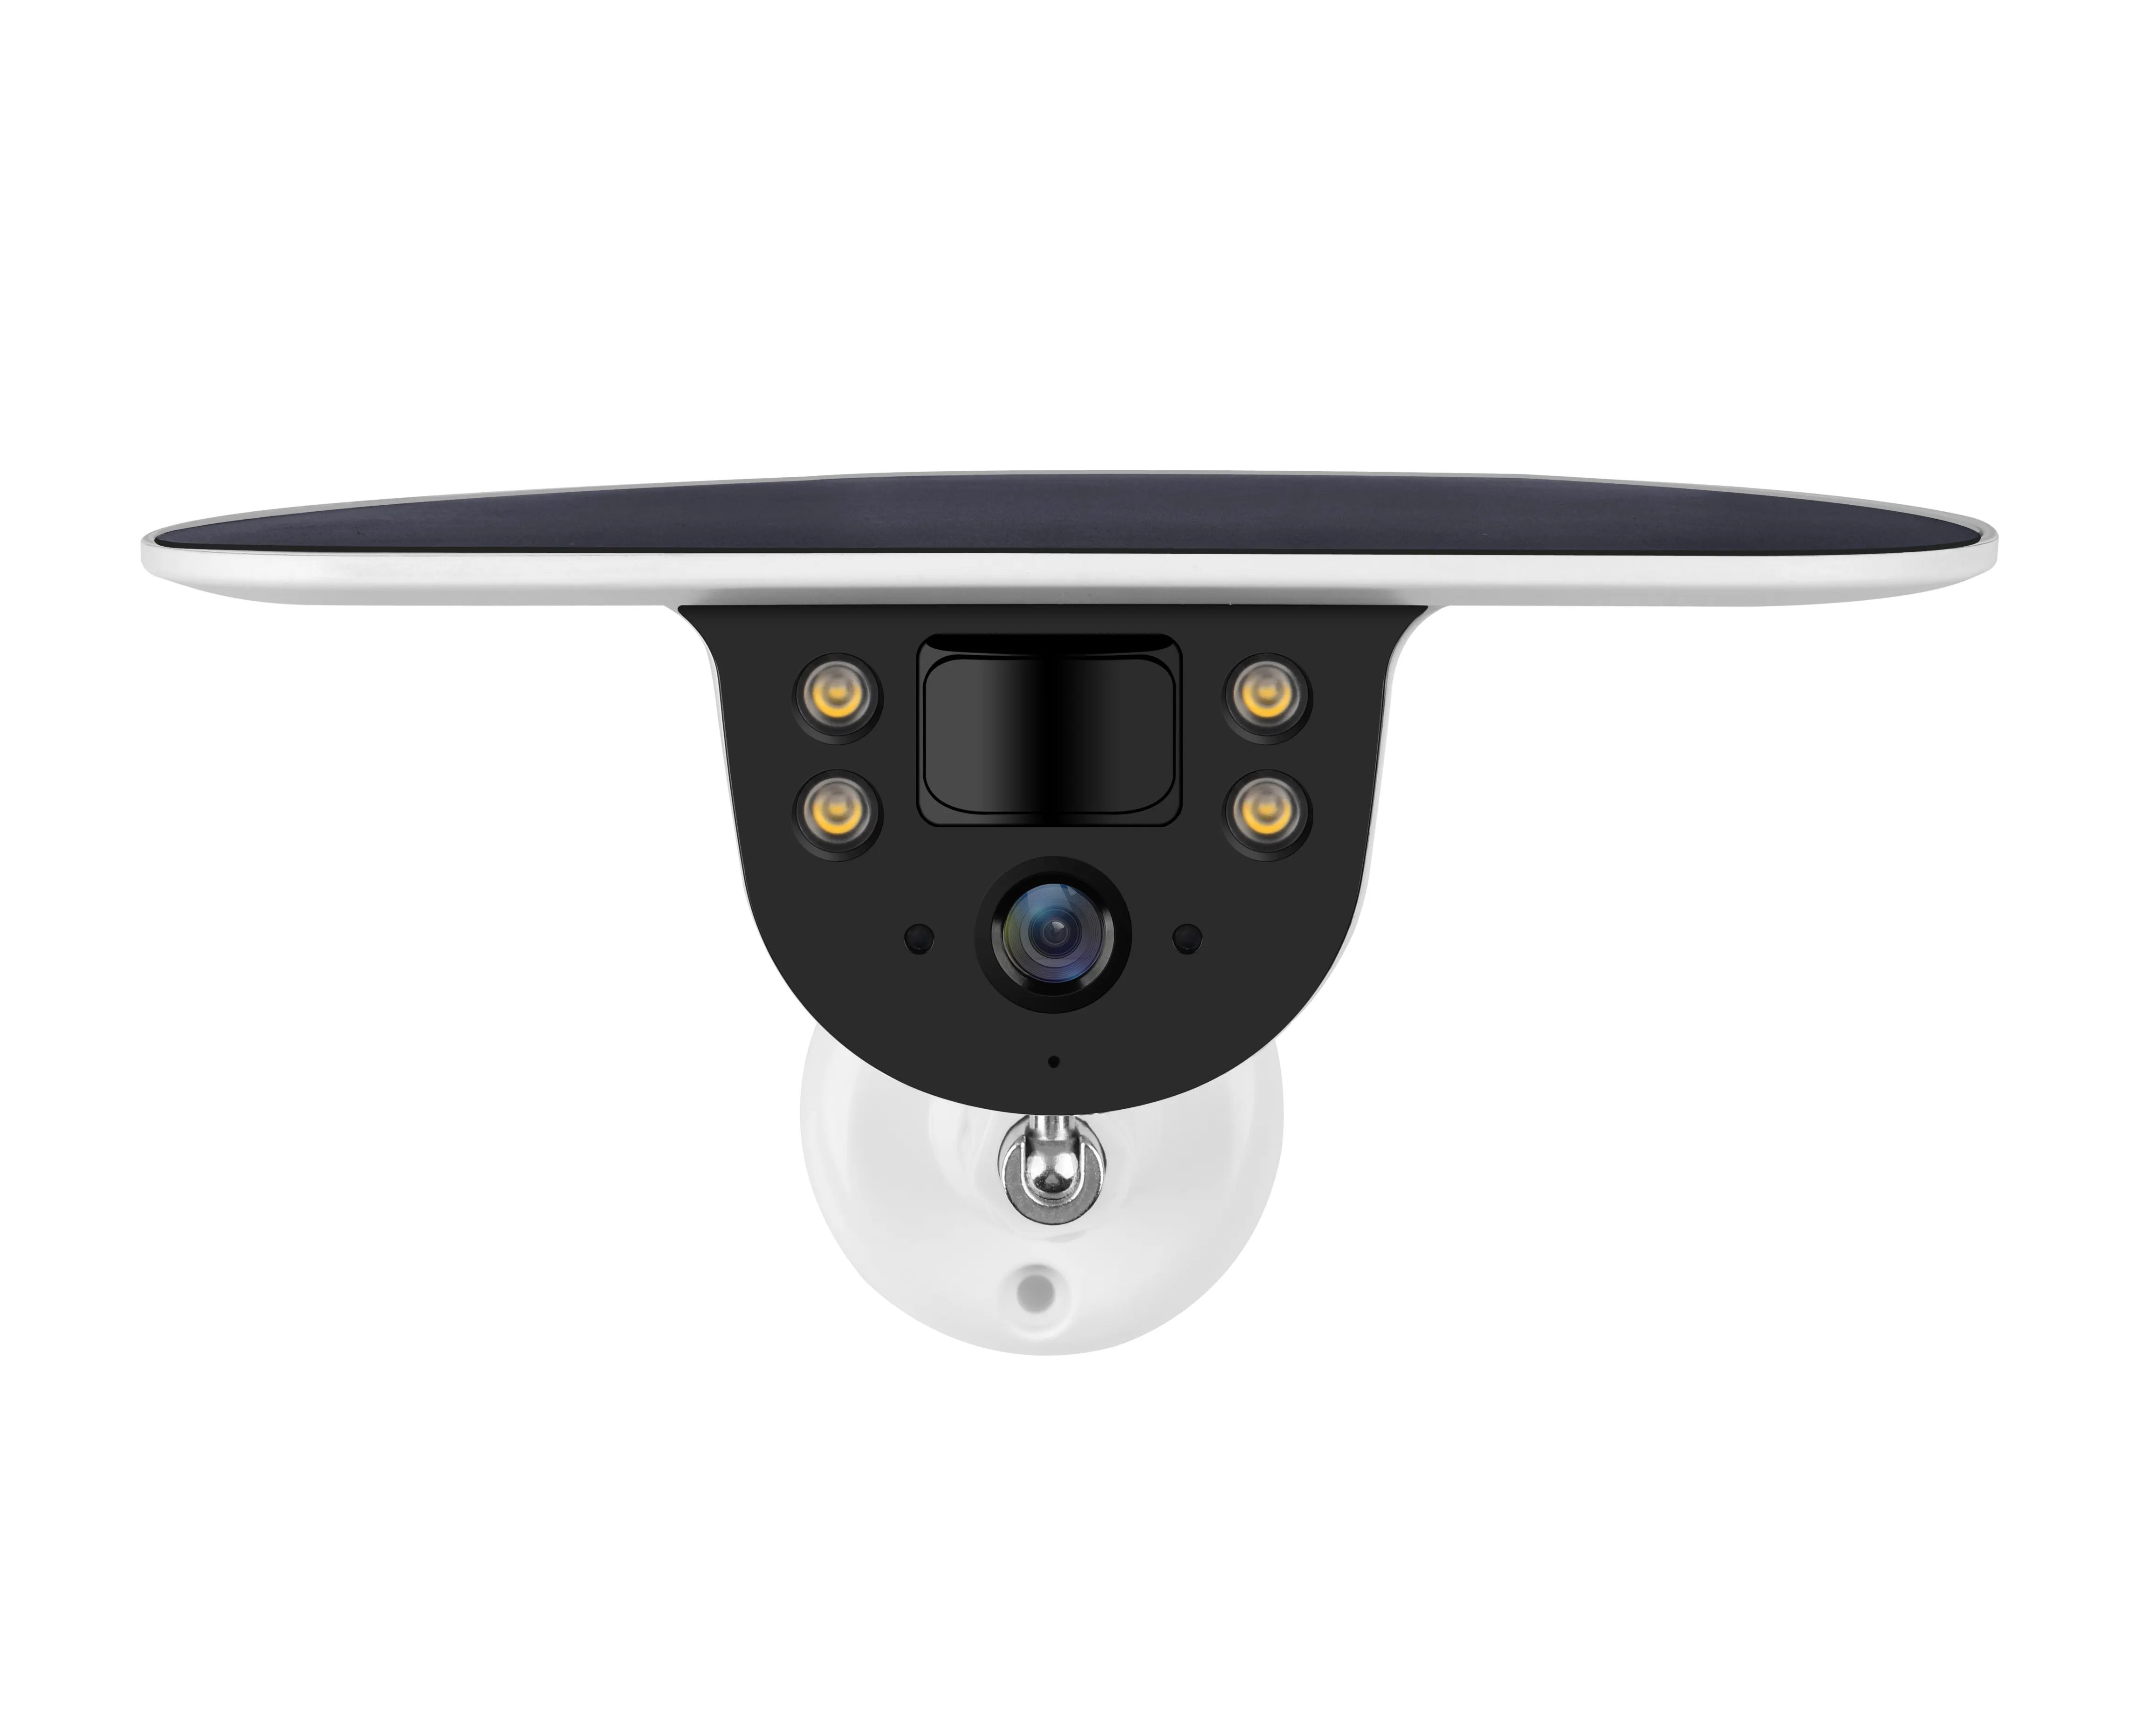 उच्च दक्षता वाले वीडियो सोलर कैमरा के लिए नया प्रमोशन हॉट स्टाइल आईओटी-सक्षम स्मार्ट सुरक्षा प्रणाली